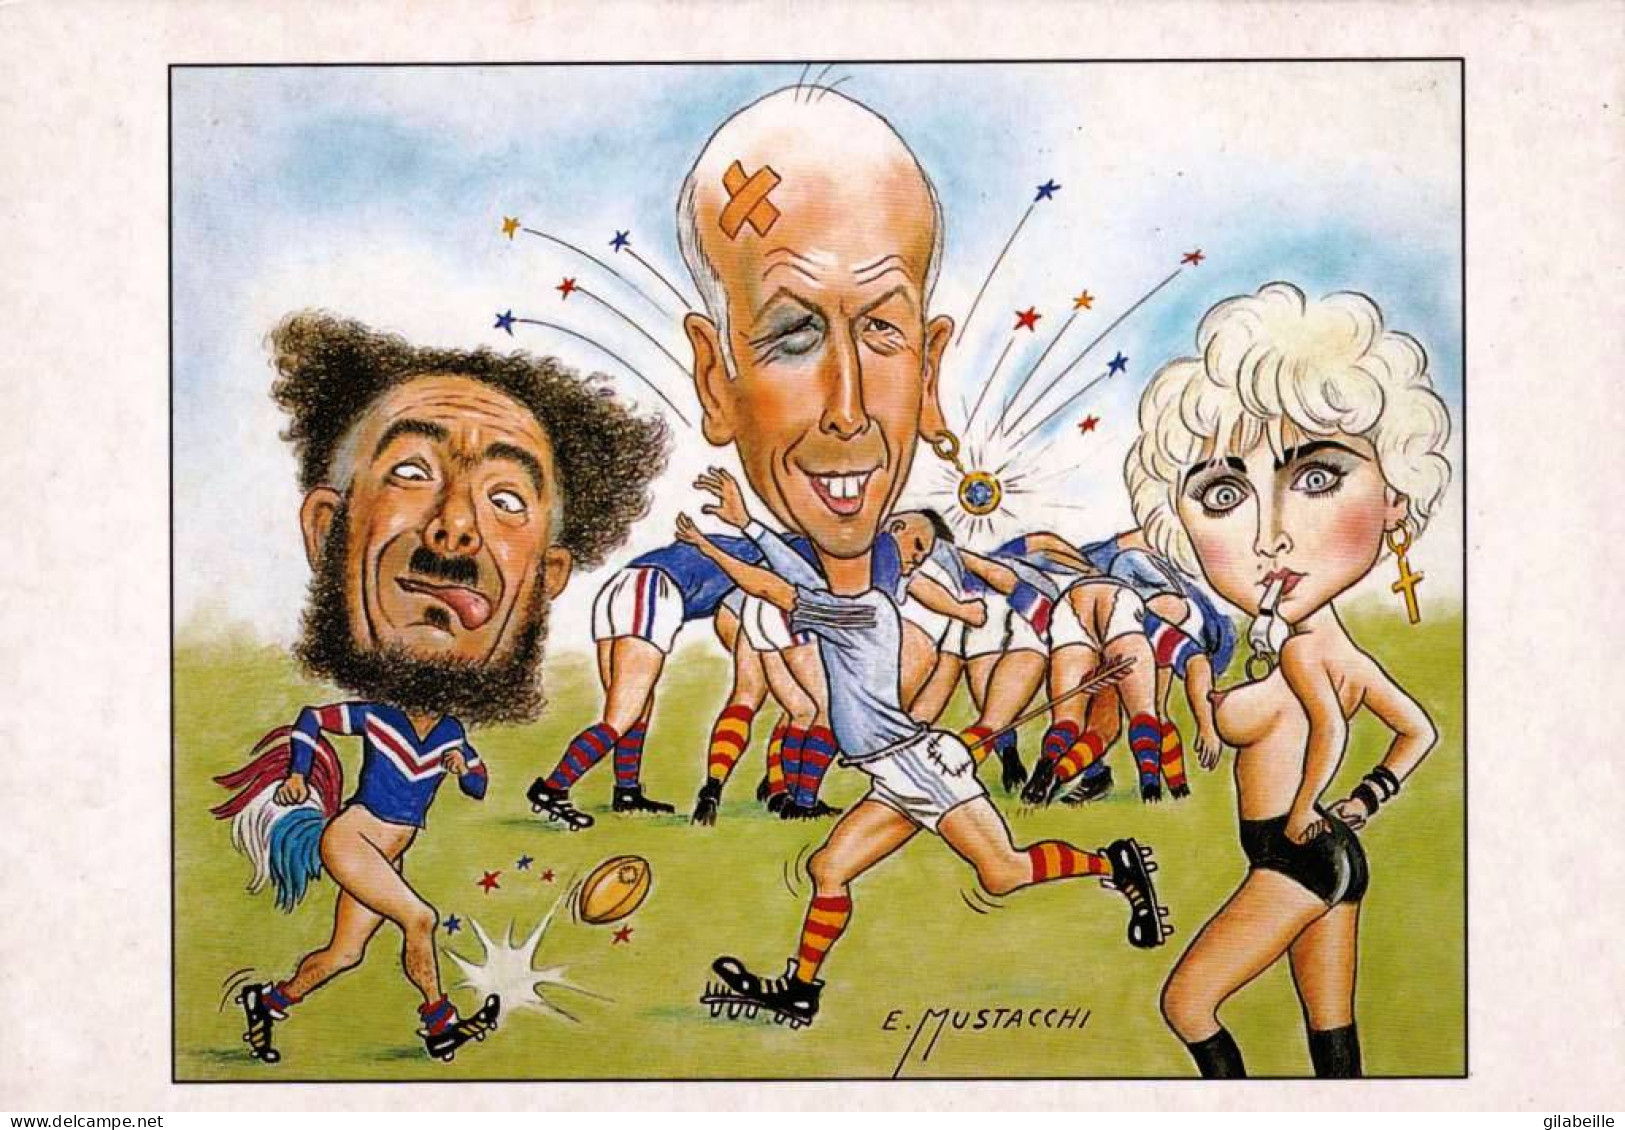  Illustrateur - Giscard D'Estaing Jouant Au Rugby Par Le Dessinateur E.MUSTACCHI - Zonder Classificatie